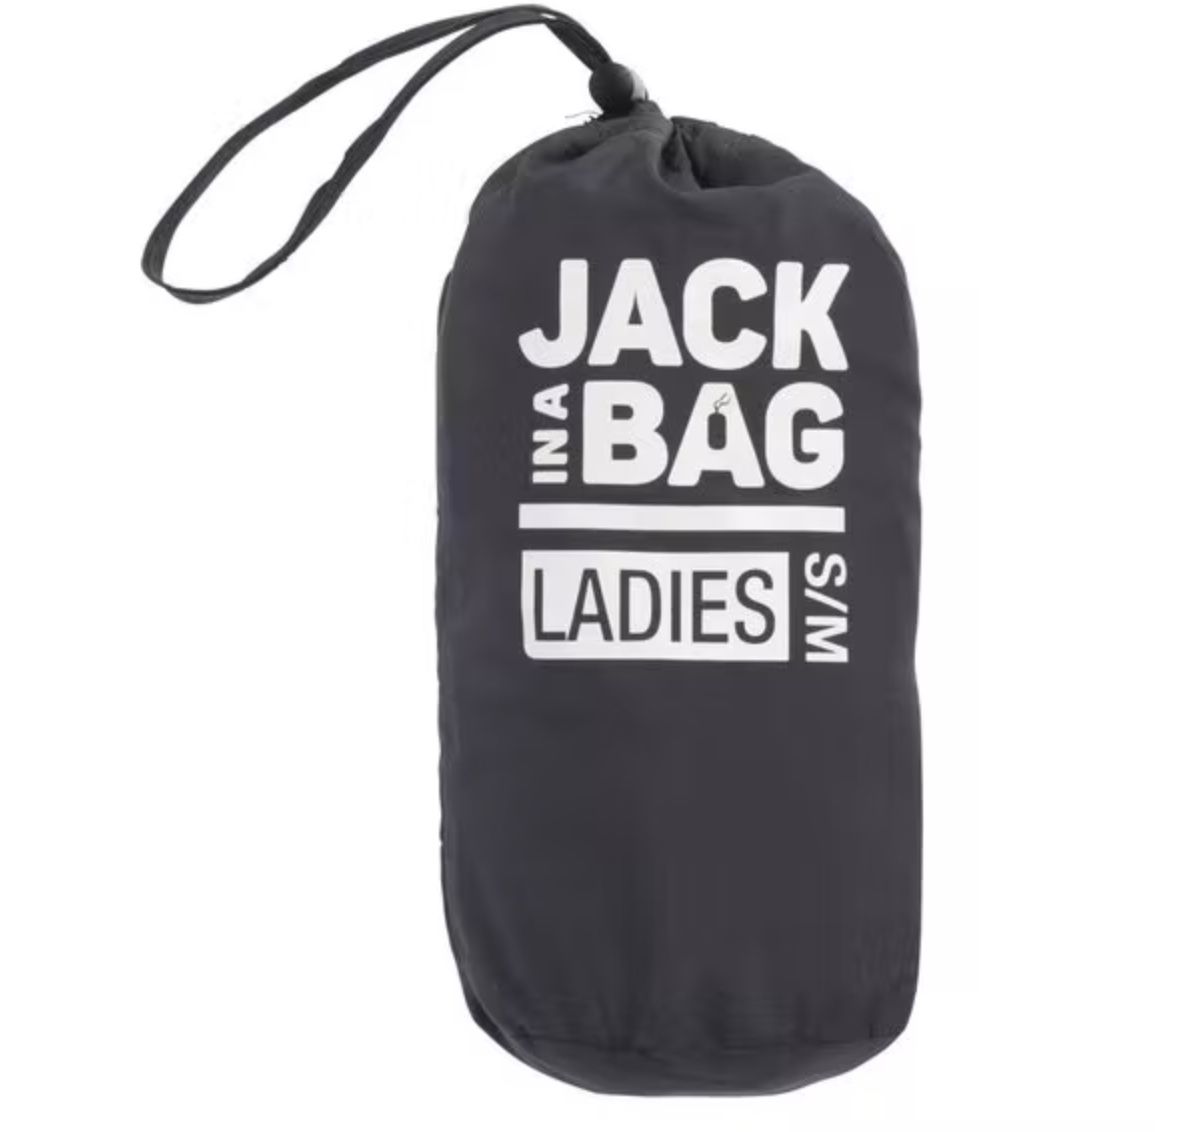 Jack in a Bag Lightweight Jacke in 8 Farben für 13,85€